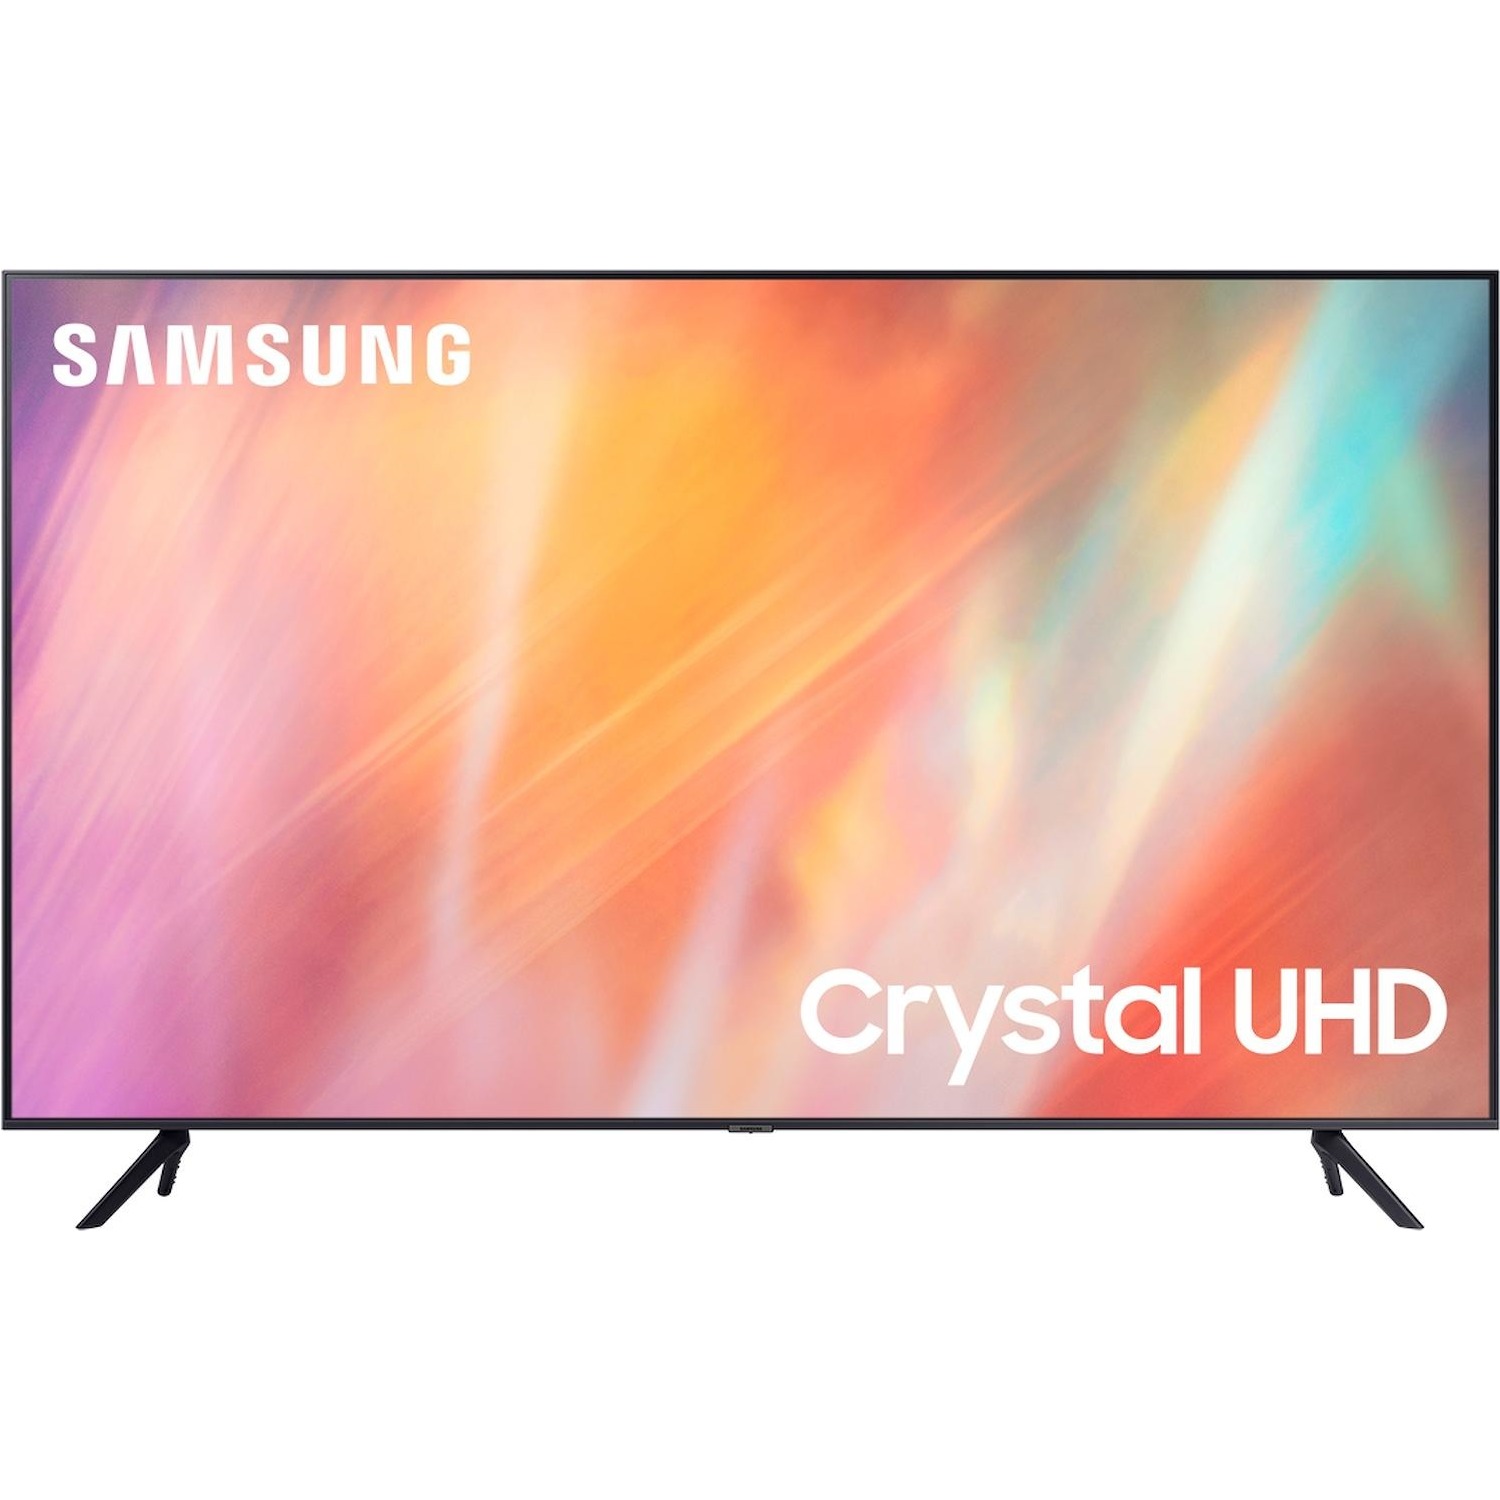 Immagine per TV LED Samsung 65AU7170 Calibrato 4K e FULL HD da DIMOStore